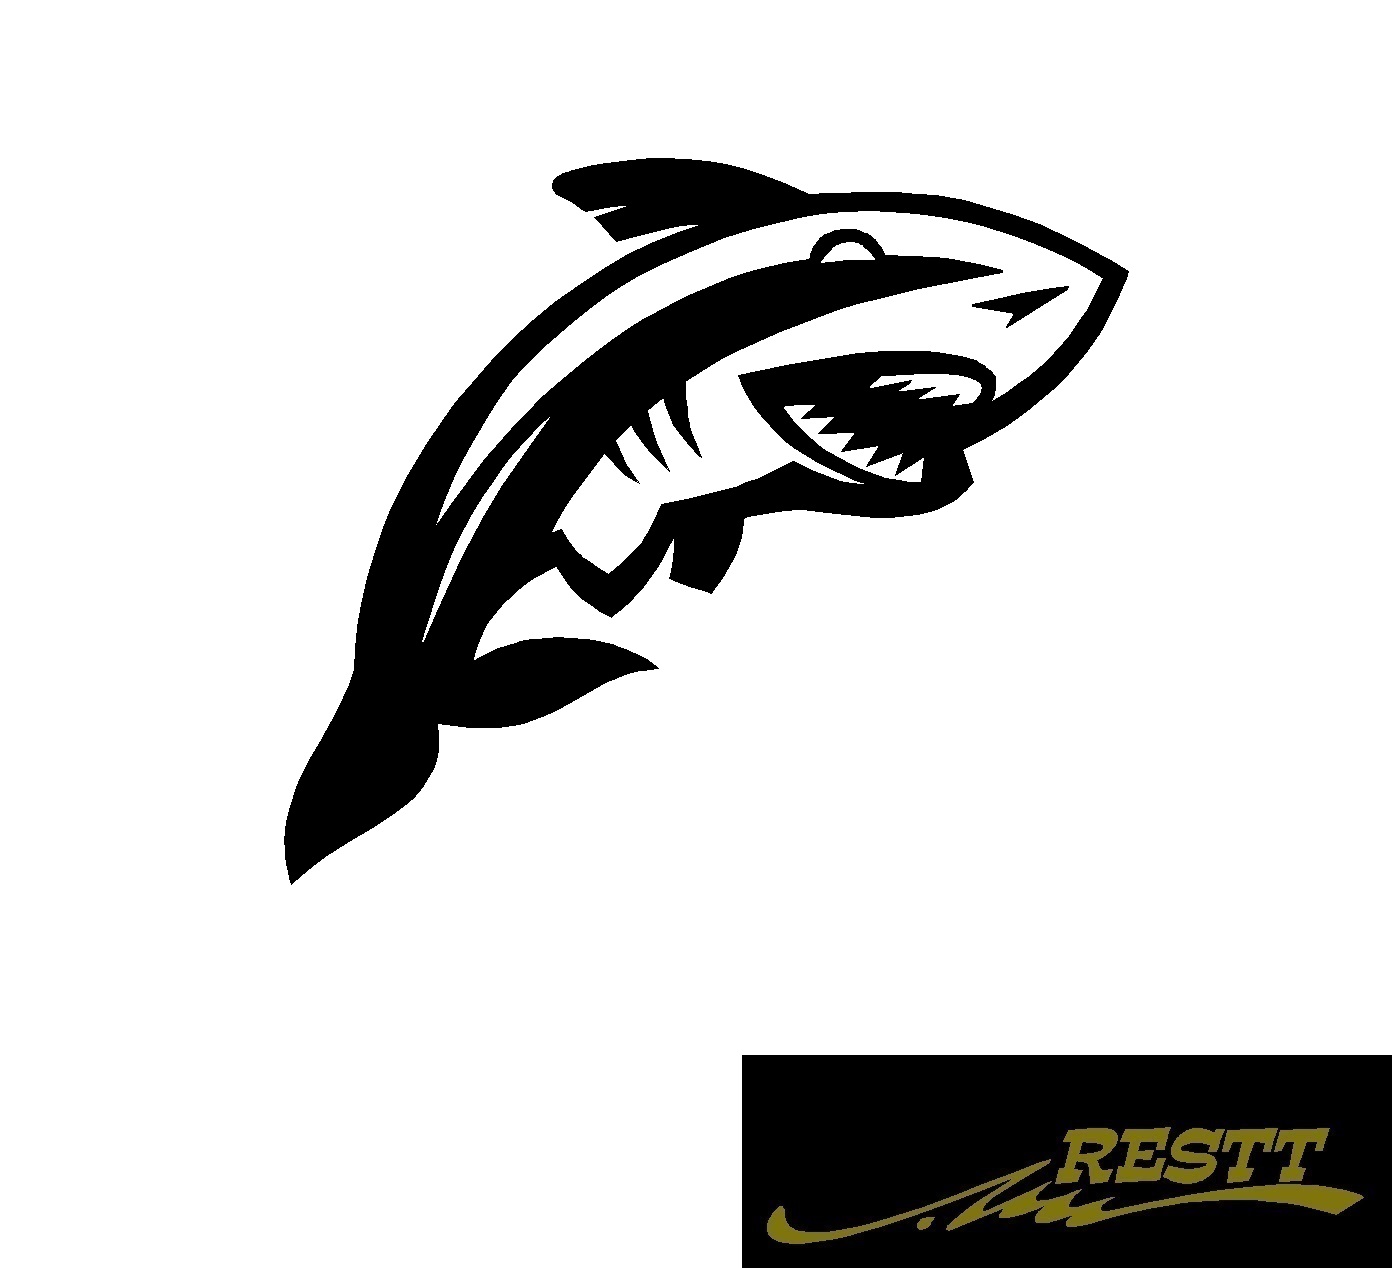 豊富なカラー色から作成かっこいい鮫デザインおしゃれなステッカー サメ アウトレット 送料無料 イラスト 中サイズ カッティングステッカー ロゴ